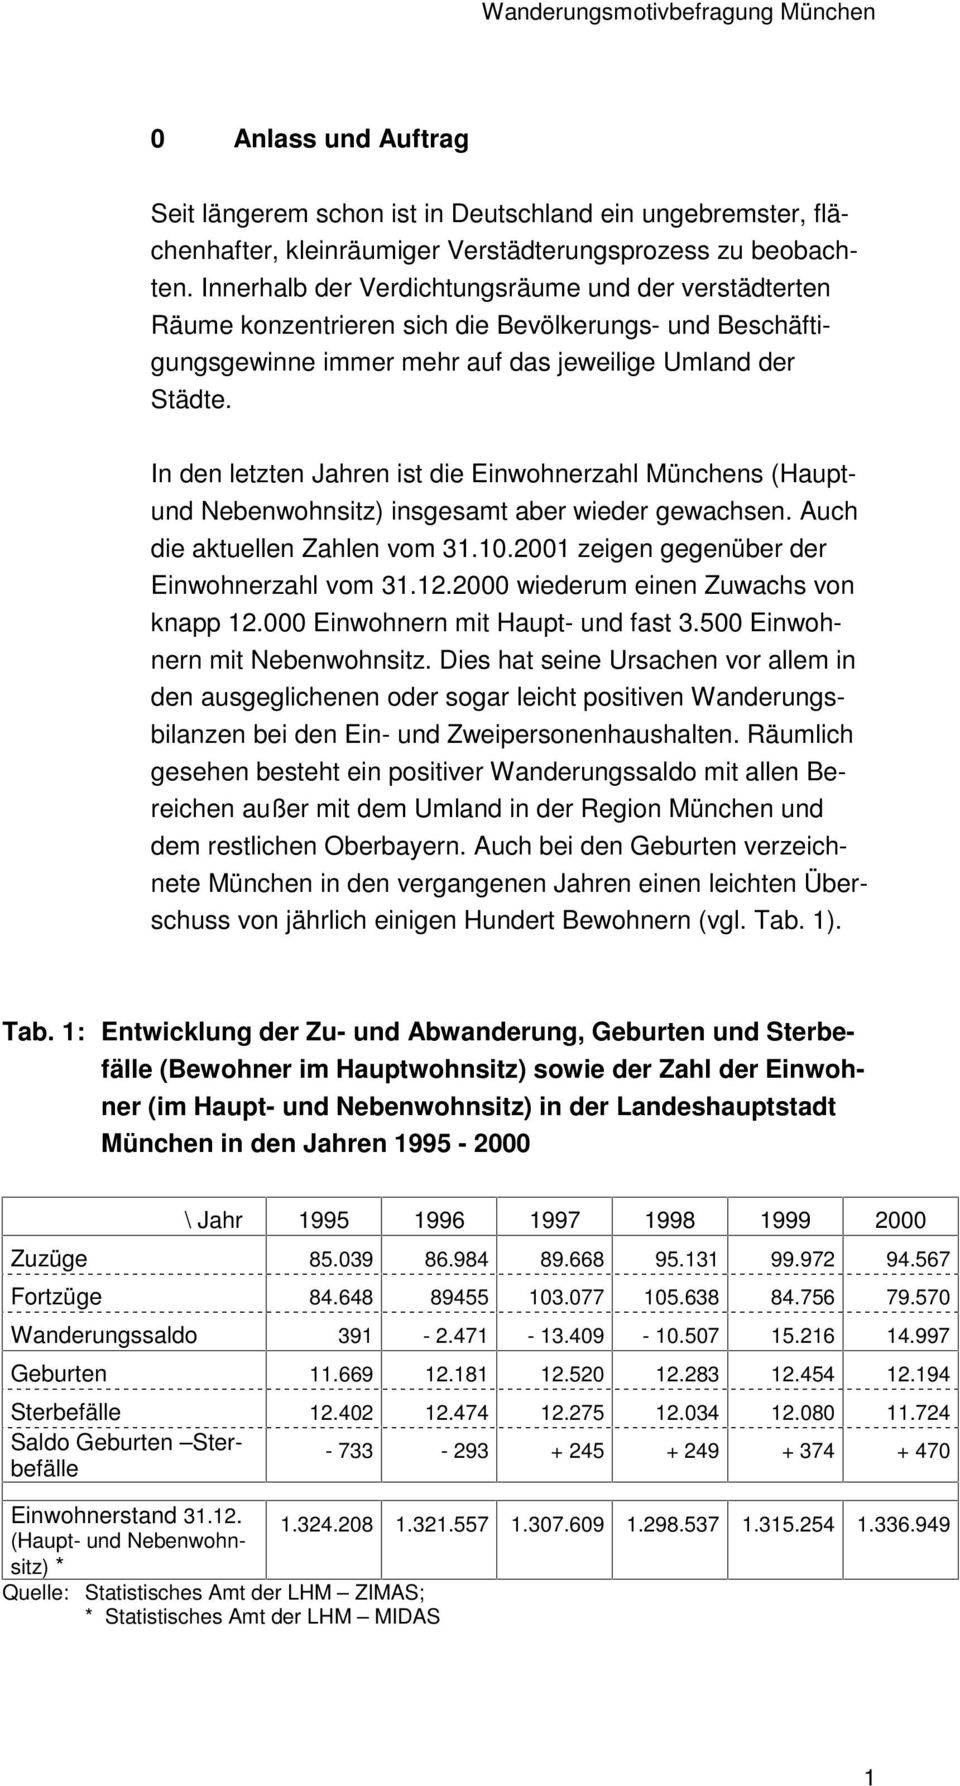 In den letzten Jahren ist die Einwohnerzahl Münchens (Hauptund Nebenwohnsitz) insgesamt aber wieder gewachsen. Auch die aktuellen Zahlen vom 31.10.2001 zeigen gegenüber der Einwohnerzahl vom 31.12.